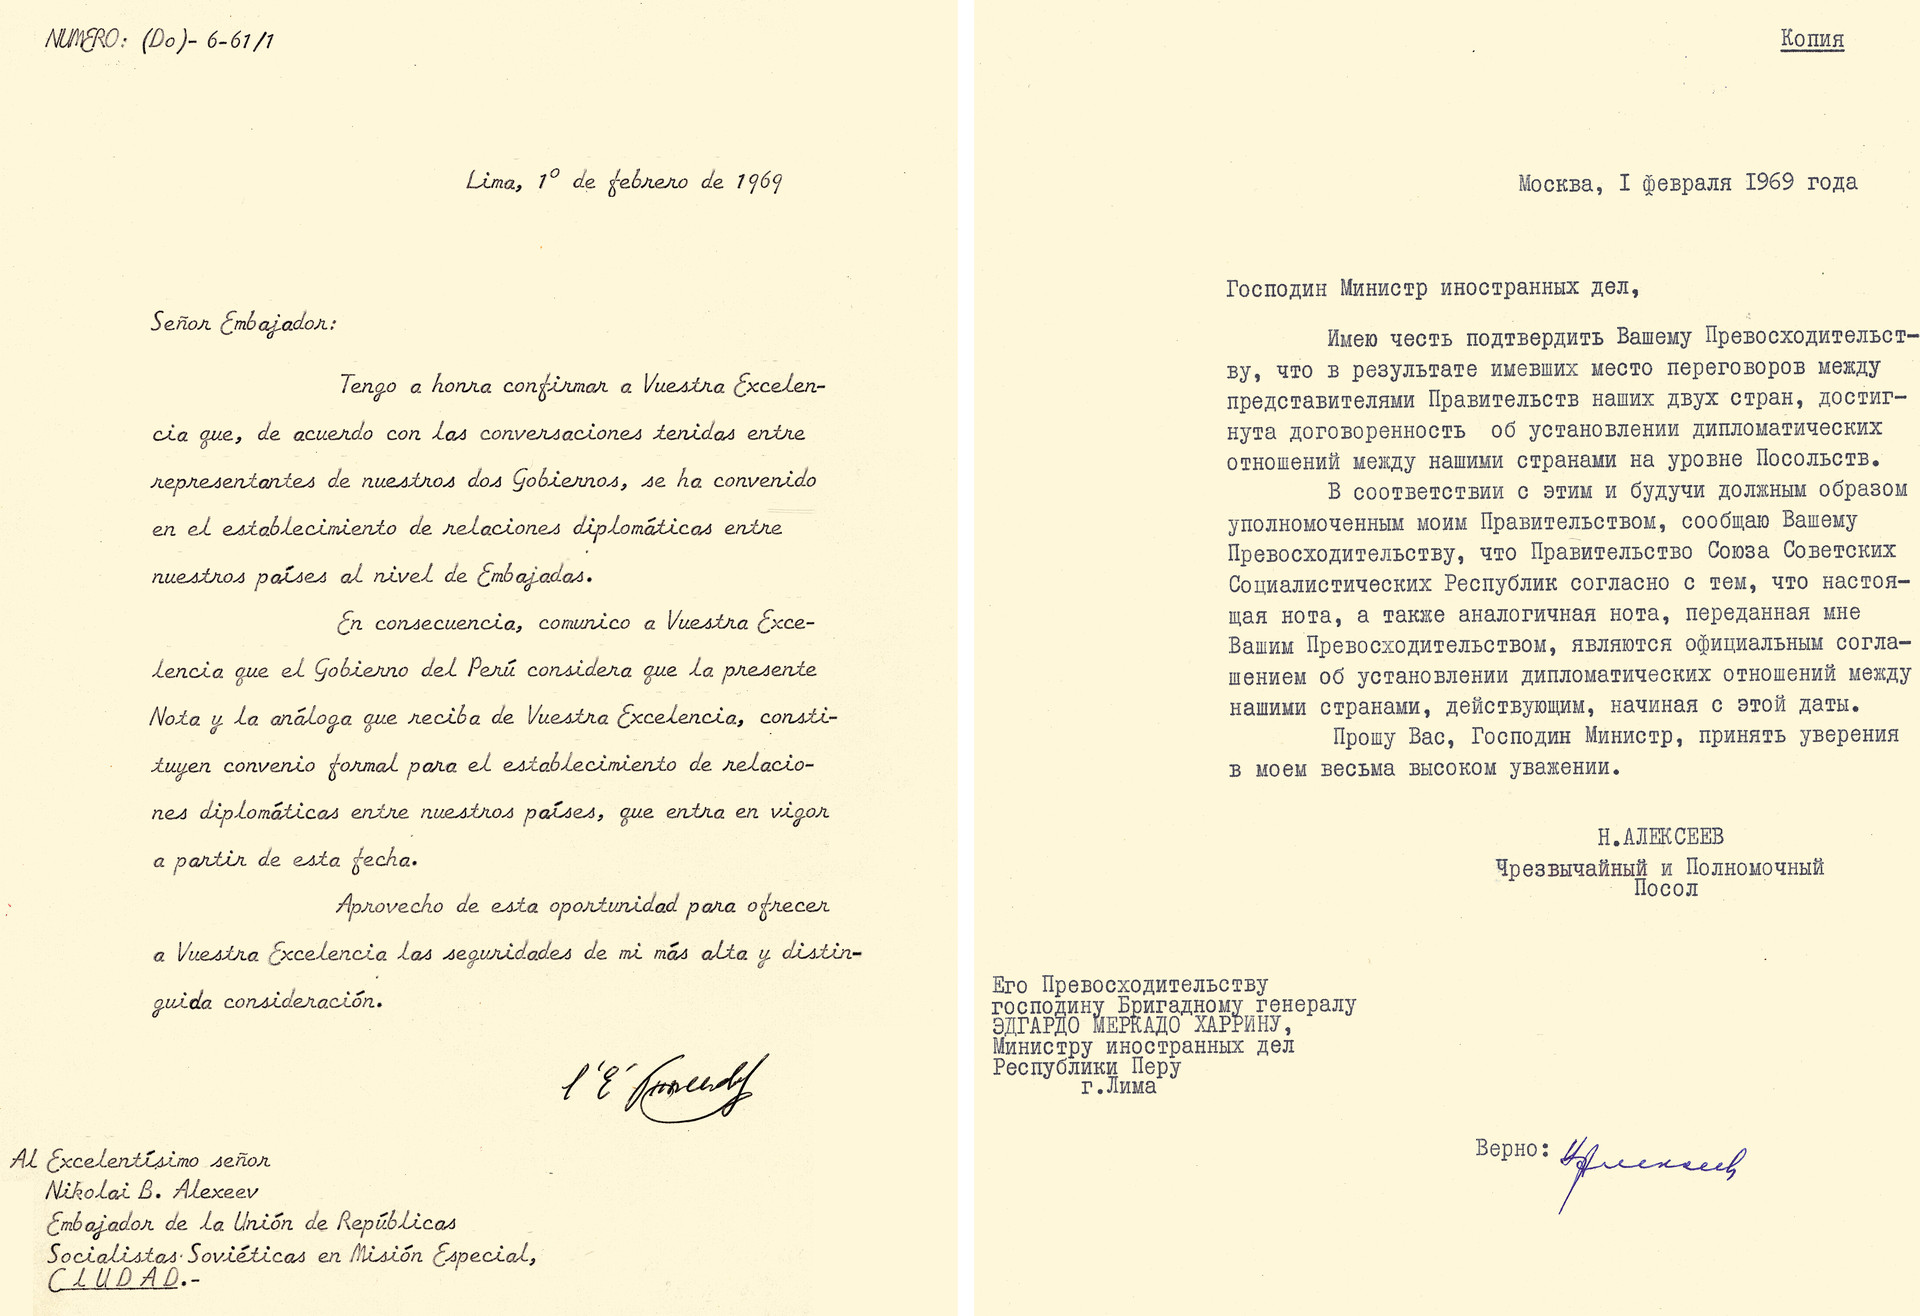 Intercambio de notas entre el ministro de Relaciones Exteriores del Perú, Edgardo Mercado Jarrín, y el embajador de la URSS, Nikolái B. Alexéiev, para el establecimiento de relaciones diplomáticas entre el Perú y la URSS a nivel de Embajadas a partir del 1 de febrero de 1969.